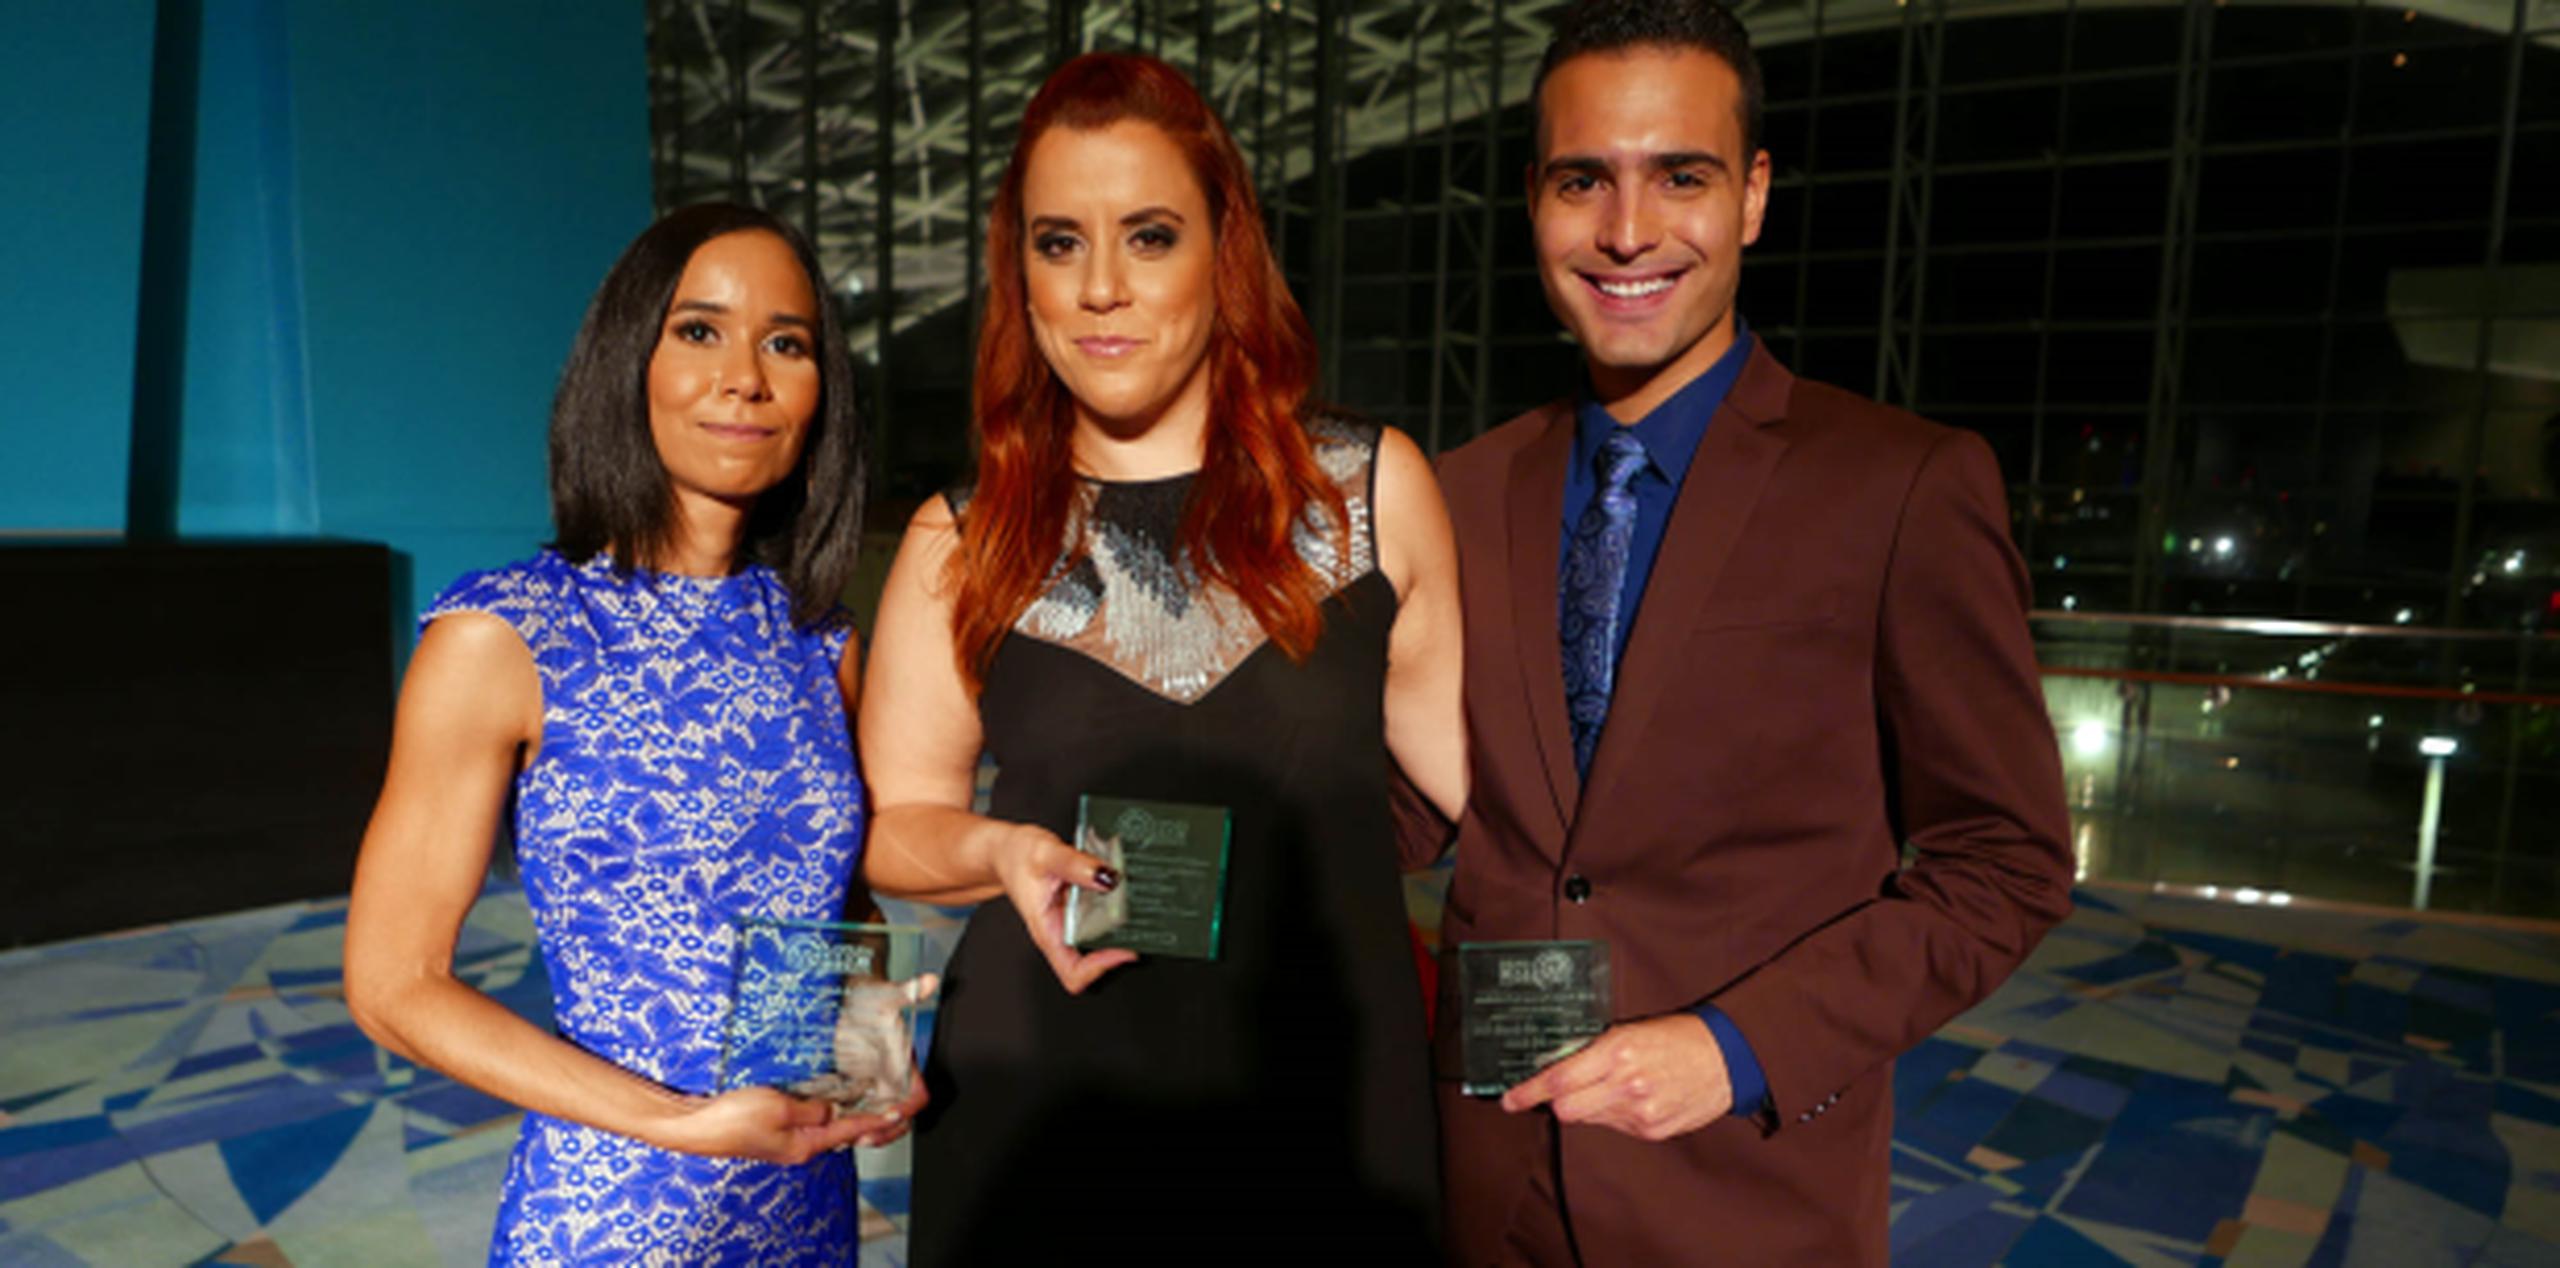 Adlín González, Leysa Caro y Marcos Billy Guzmán fueron premiados durante la gala anual de la Asppro. (david.villafane@gfrmedia.com)